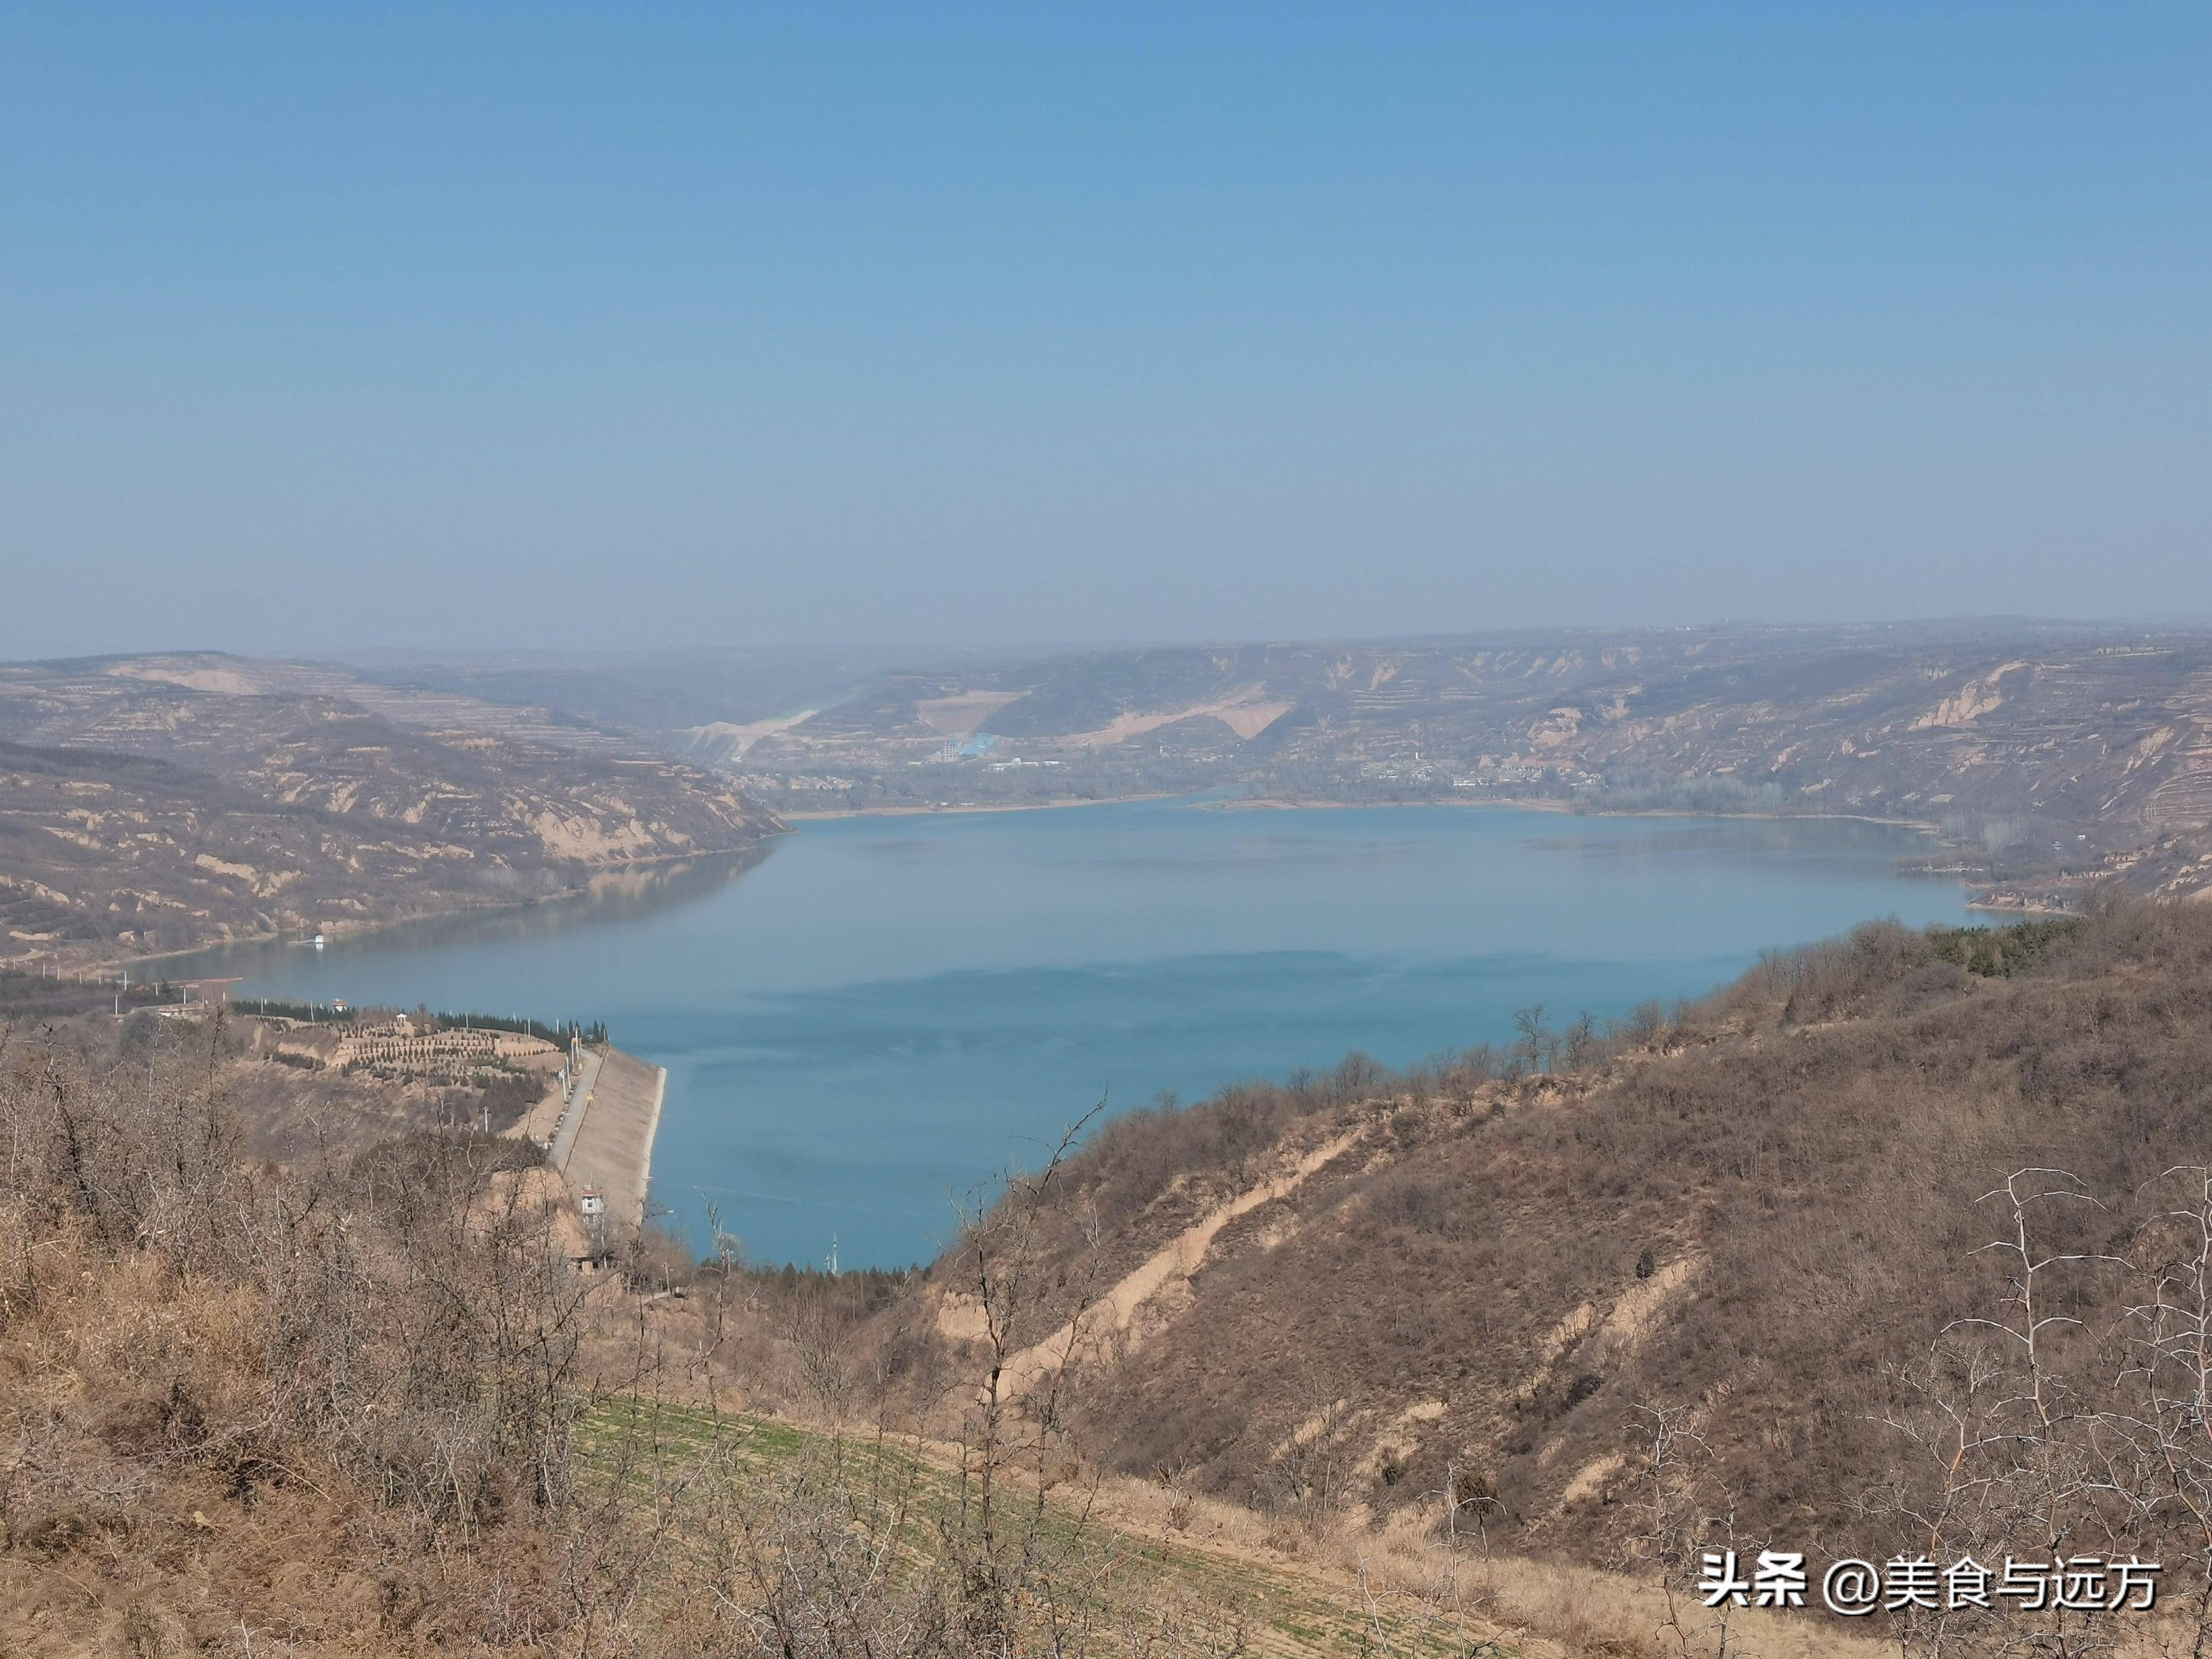 中国农科城——姜嫄水乡——羊毛湾水库,一路景色欣赏